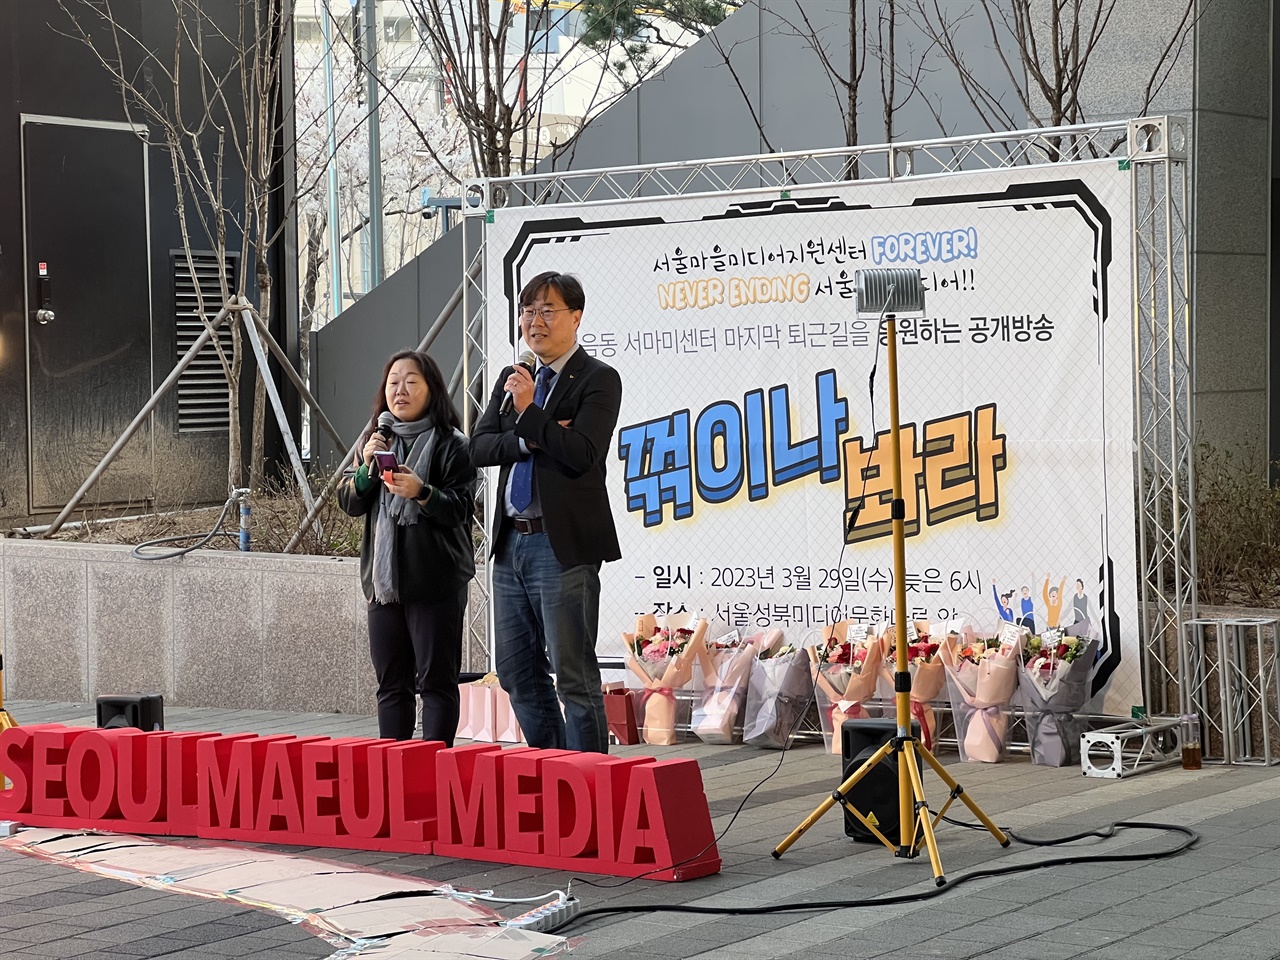 3월29일 서울마을미디어지원센터의 마지막 퇴근길에 맞춰 공개방송 '꺾이나 봐라'가 진행됐다.